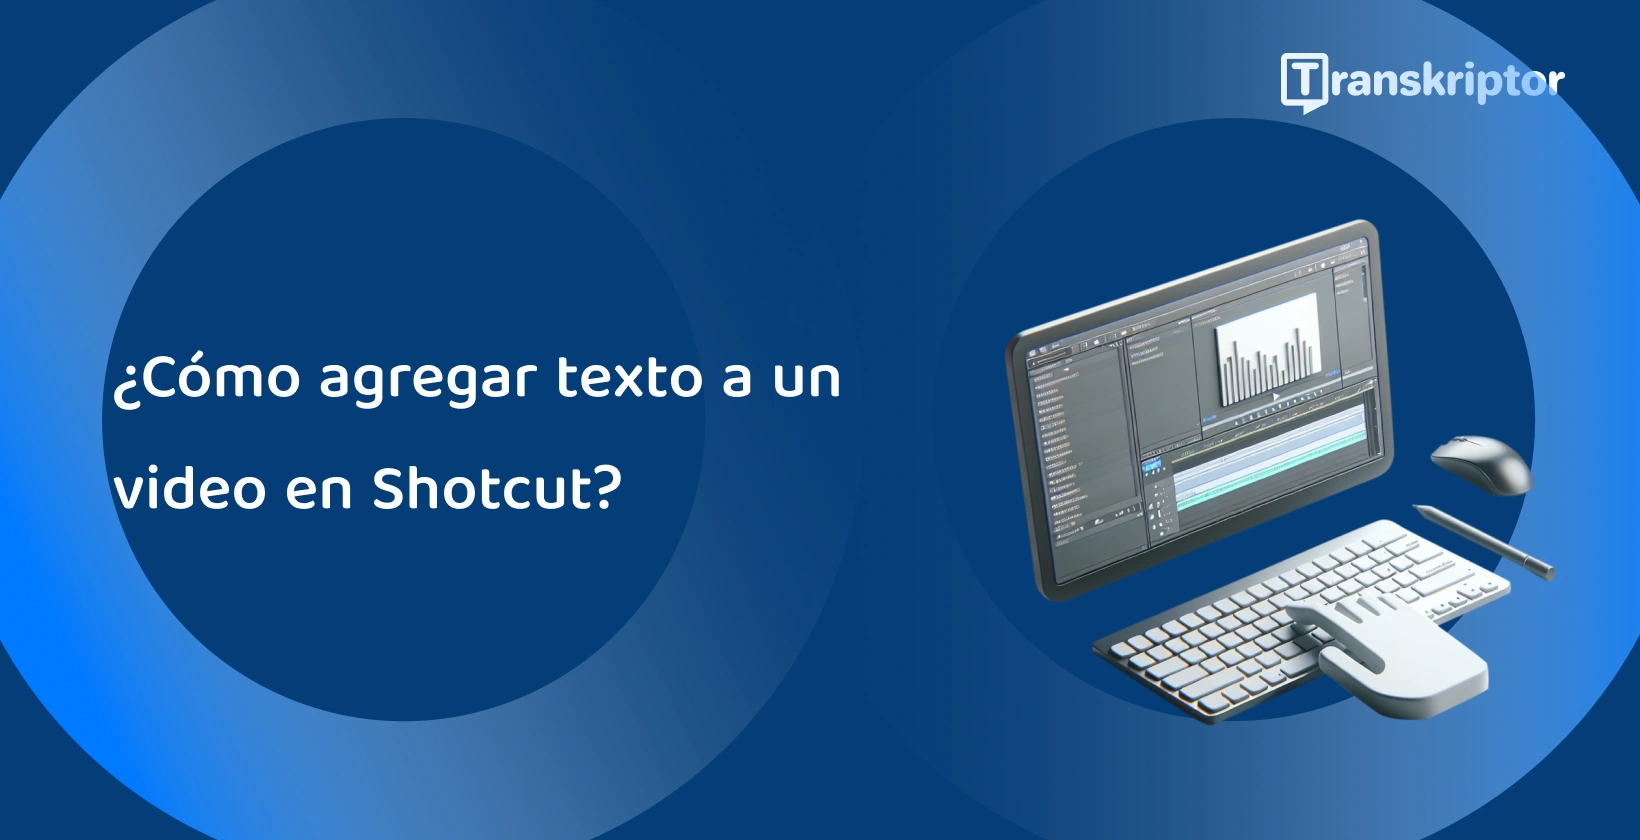 Software de edición de video Shotcut en un monitor con herramientas de forma de onda y texto, para agregar subtítulos y títulos a los videos.